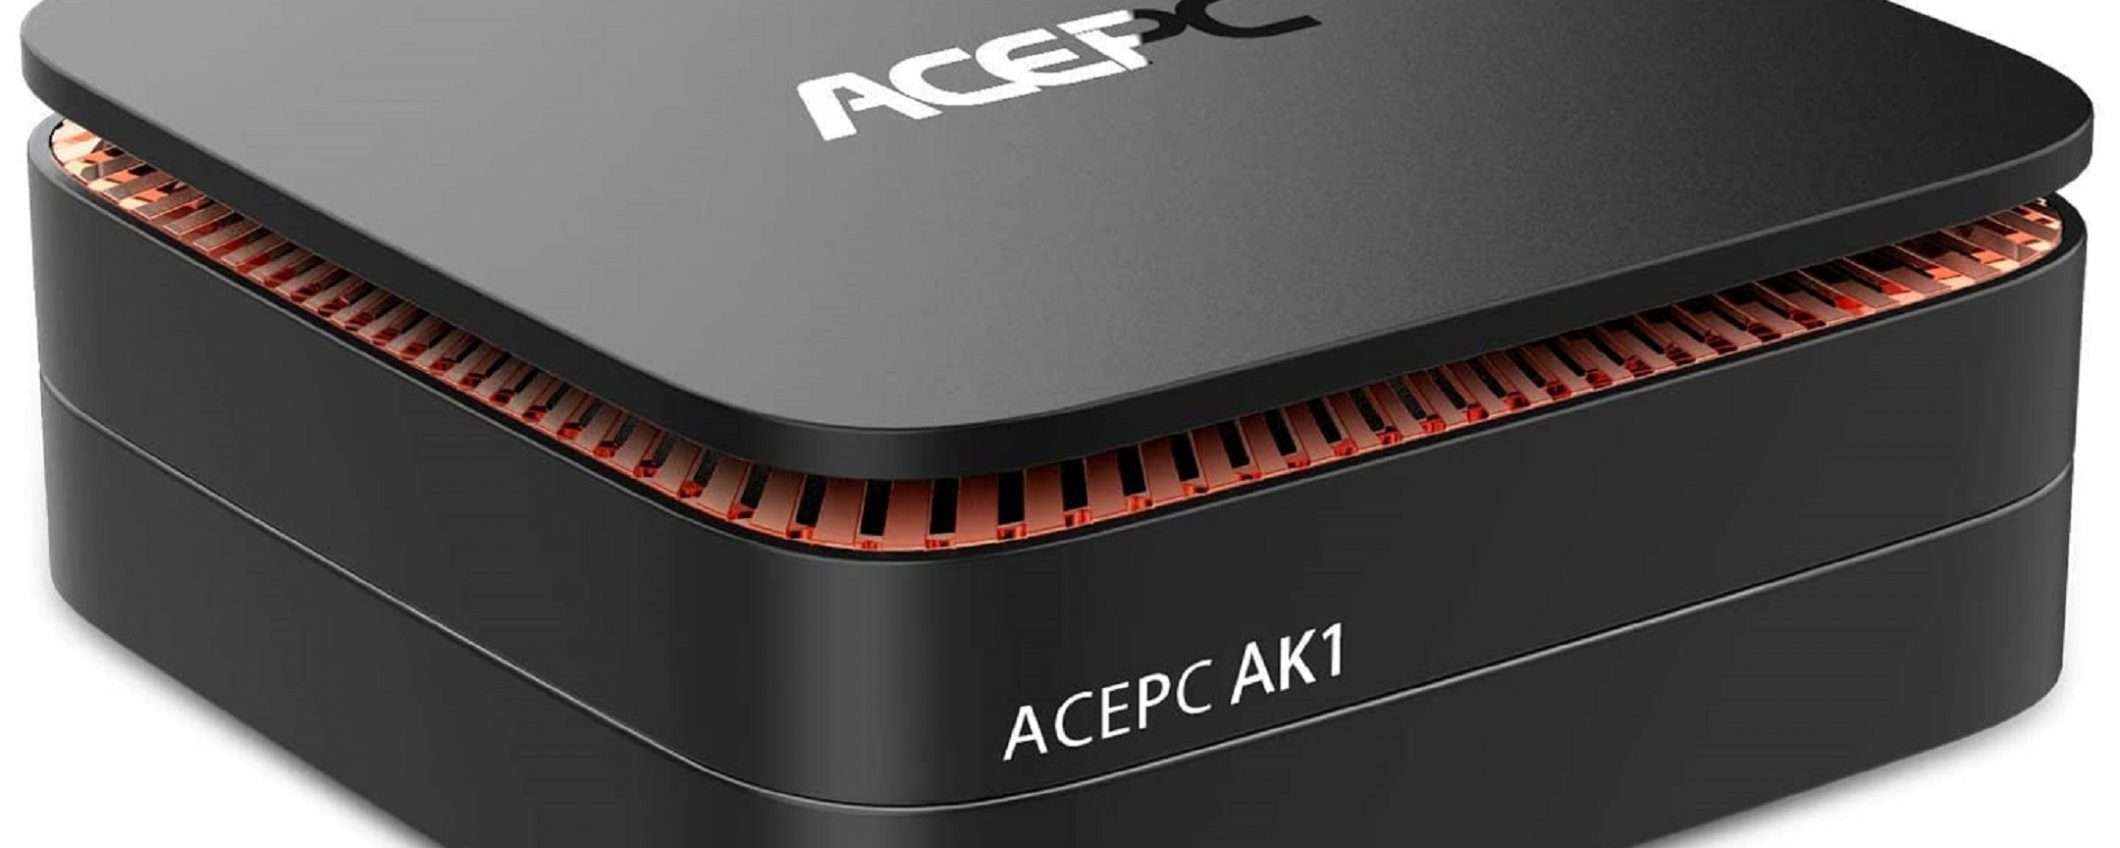 Mini PC ACEPC AK1: l'offerta lampo che non dovete perdere!